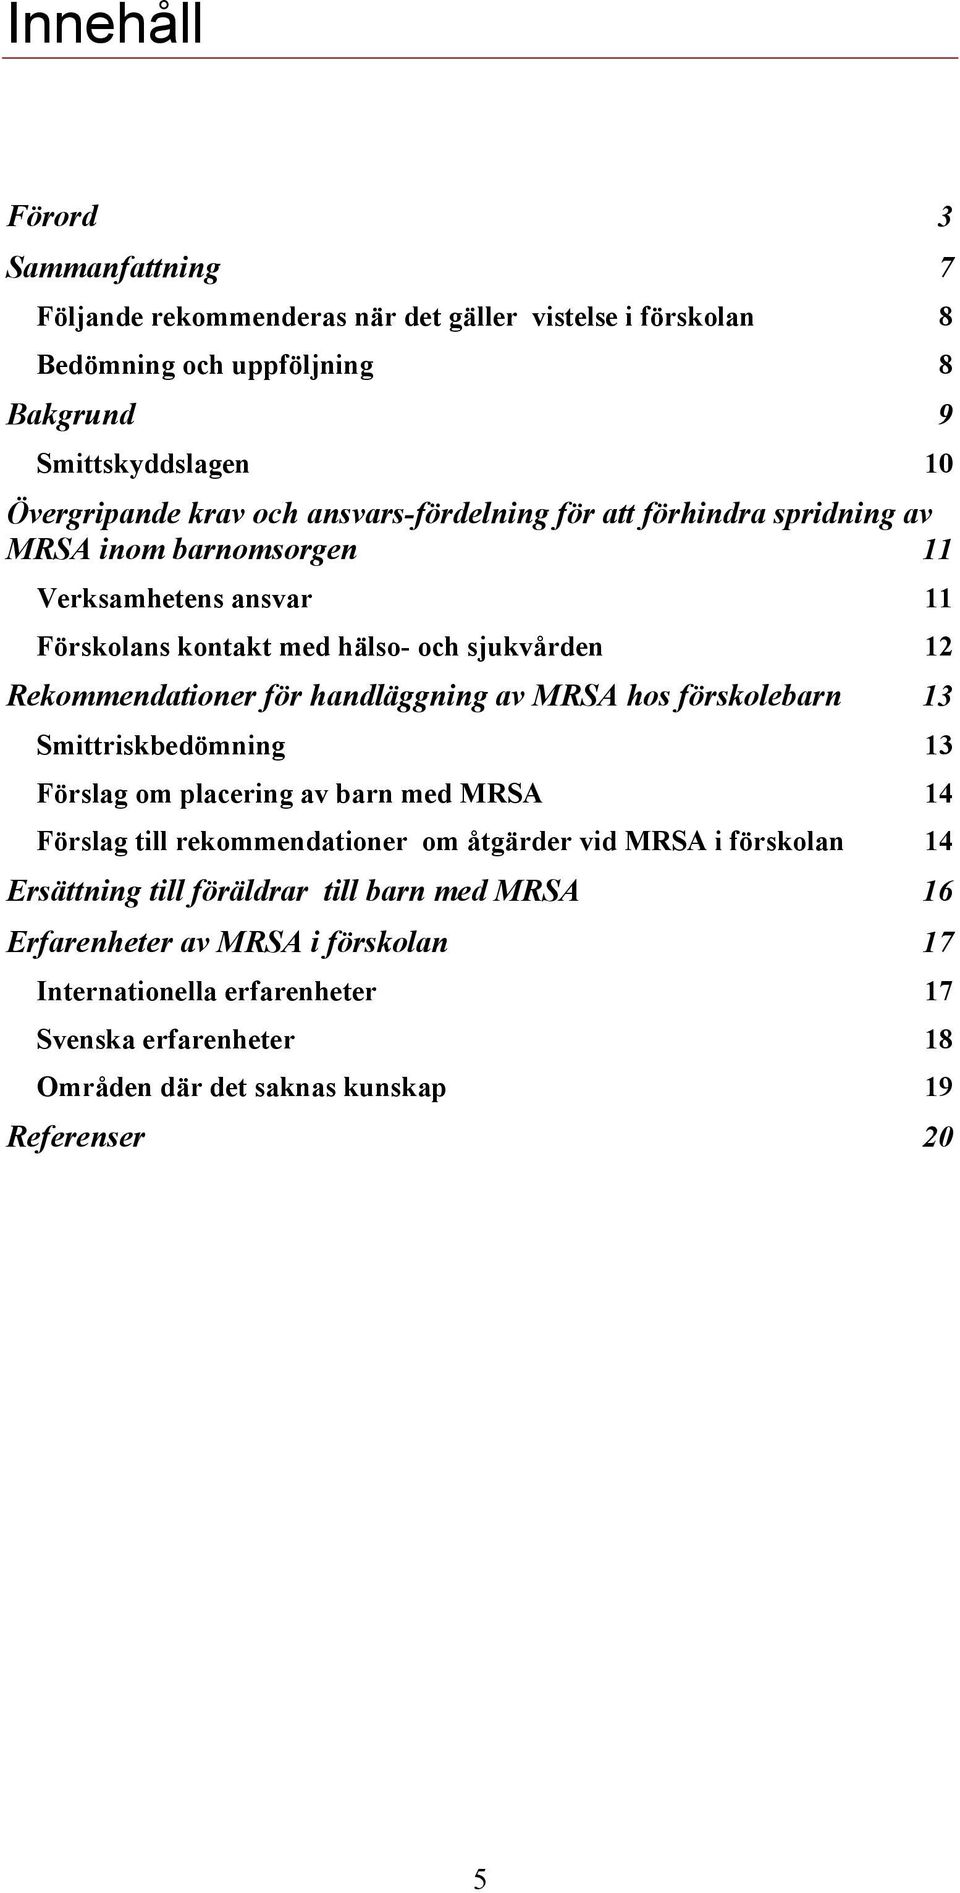 handläggning av MRSA hos förskolebarn 13 Smittriskbedömning 13 Förslag om placering av barn med MRSA 14 Förslag till rekommendationer om åtgärder vid MRSA i förskolan 14